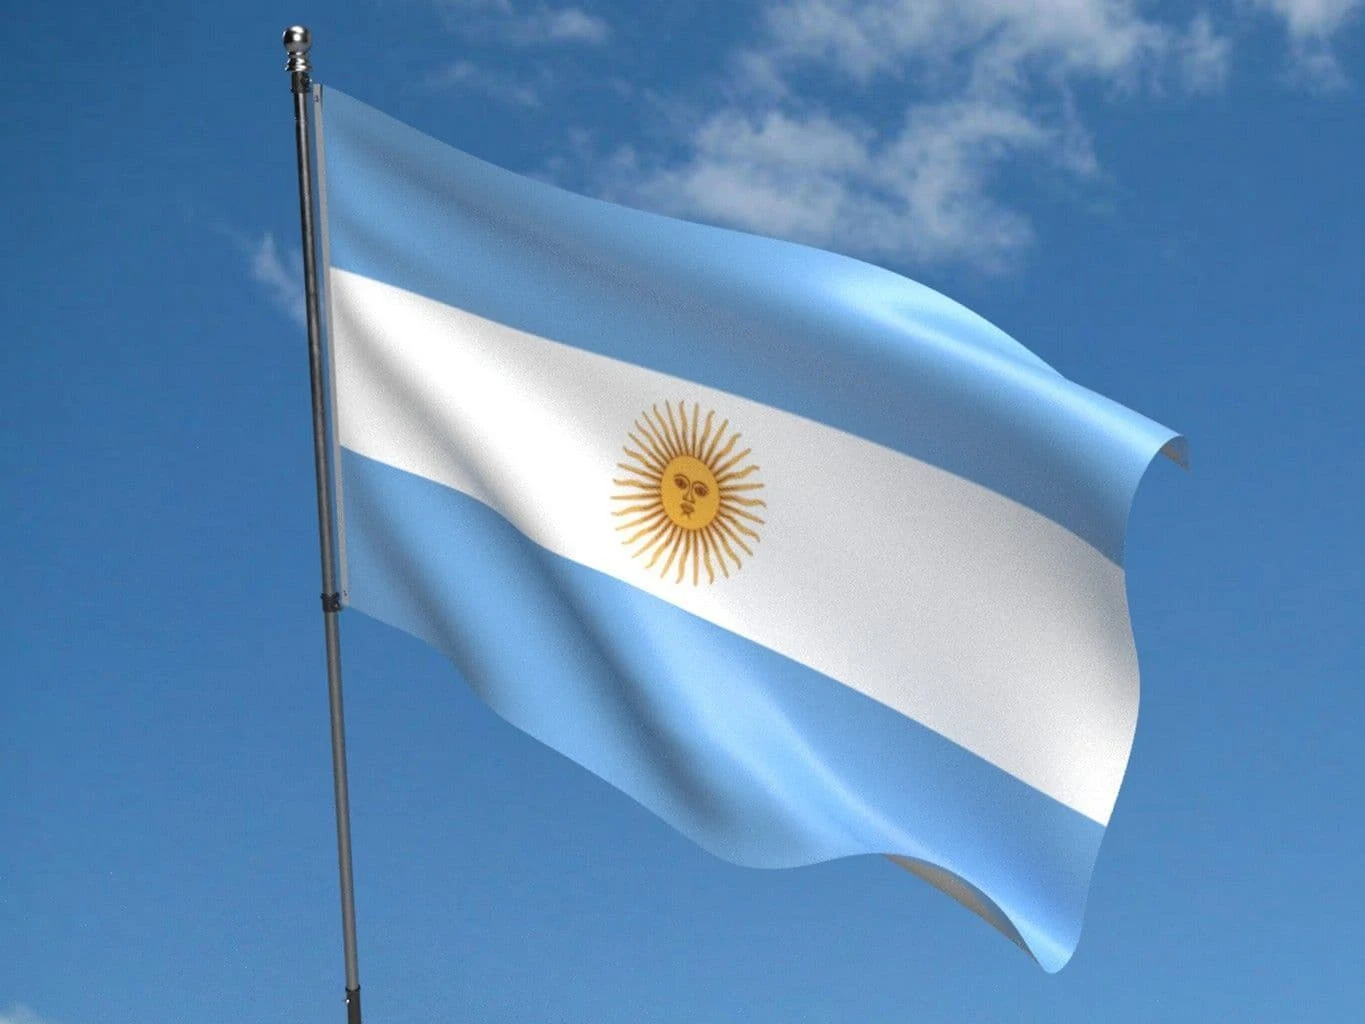 আর্জেন্টিনার পতাকার ব্যাকগ্রাউন্ড - আর্জেন্টিনার পতাকার ছবি -  আর্জেন্টিনার পতাকার ব্যাকগ্রাউন্ড -  আর্জেন্টিনার পতাকা পিকচার - Argentina flag picture - NeotericIT.com